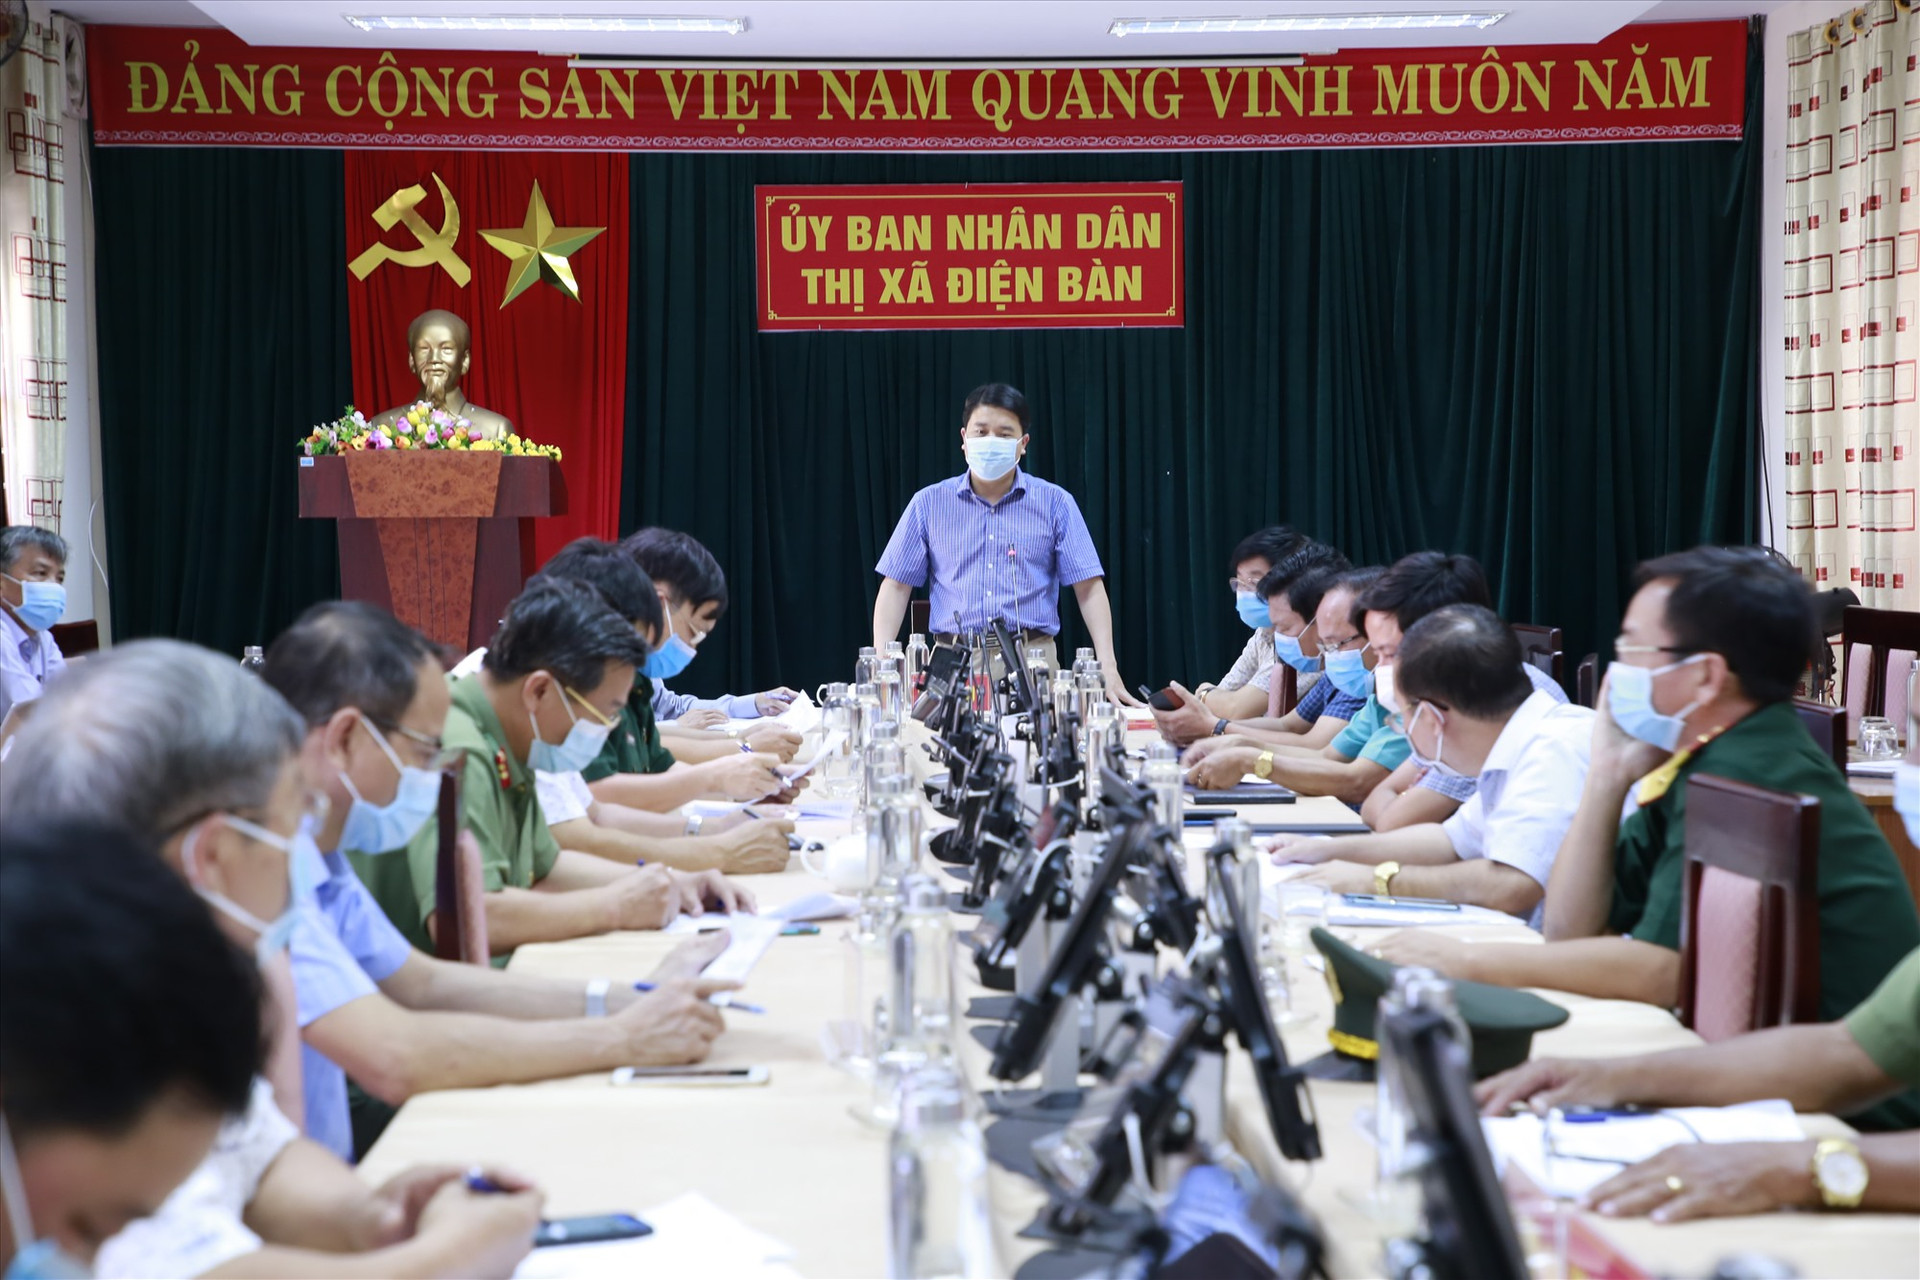 Phó Chủ tịch UBND tỉnh Trần Văn Tân phát biểu tại buổi làm việc với chính quyền thị xã Điện Bàn chiều nay, ngày 9.5. Ảnh: T.C